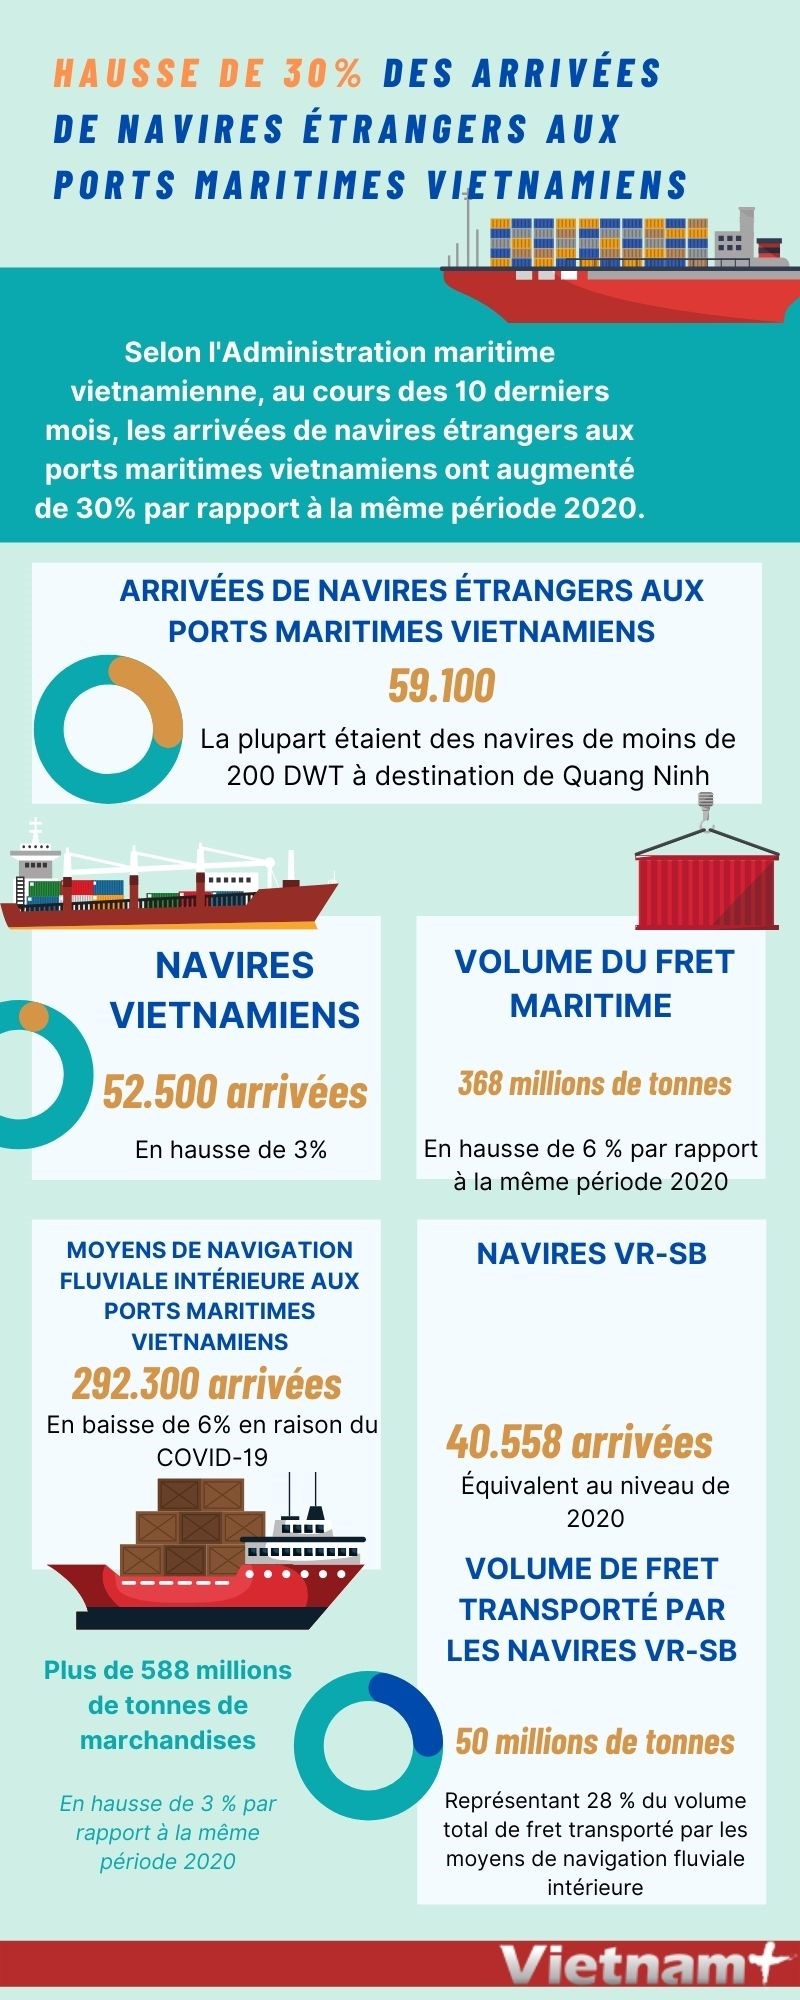 Hausse de 30% des arrivees de navires etrangers aux ports maritimes vietnamiens hinh anh 1